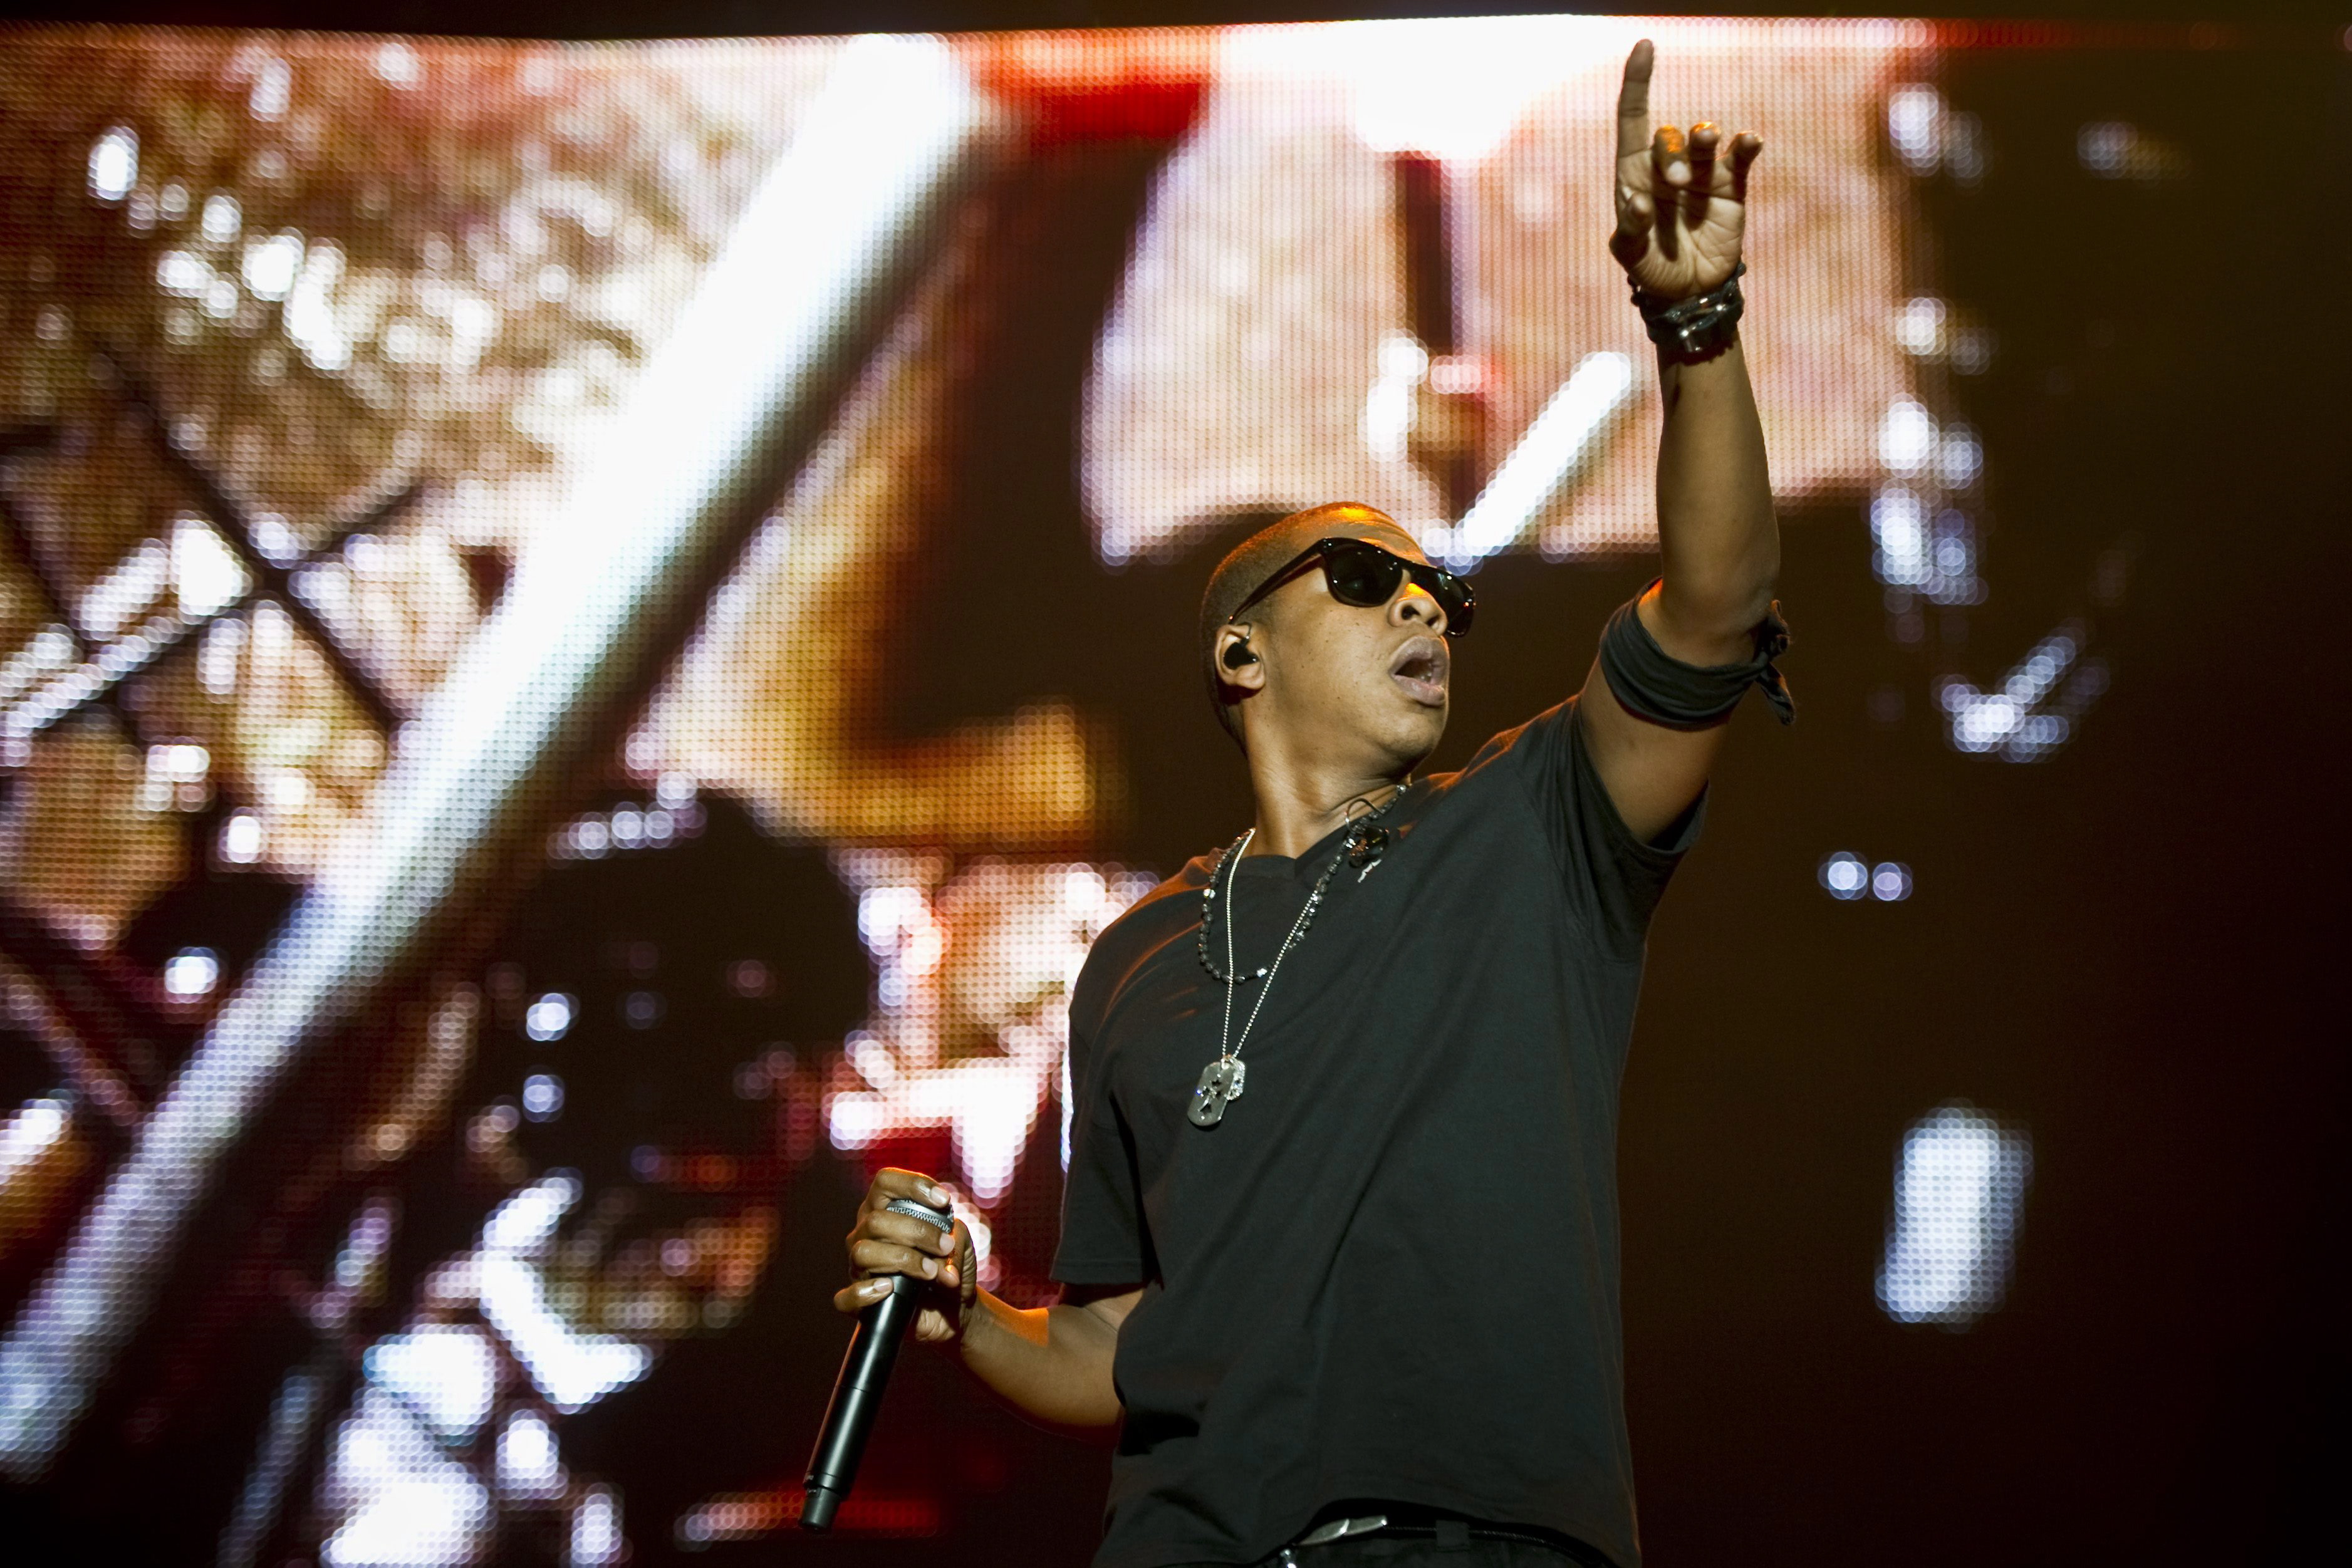 Играта ”Empire” показва пътя на Jay Z - от мошеника и предприемача до бизнес магната